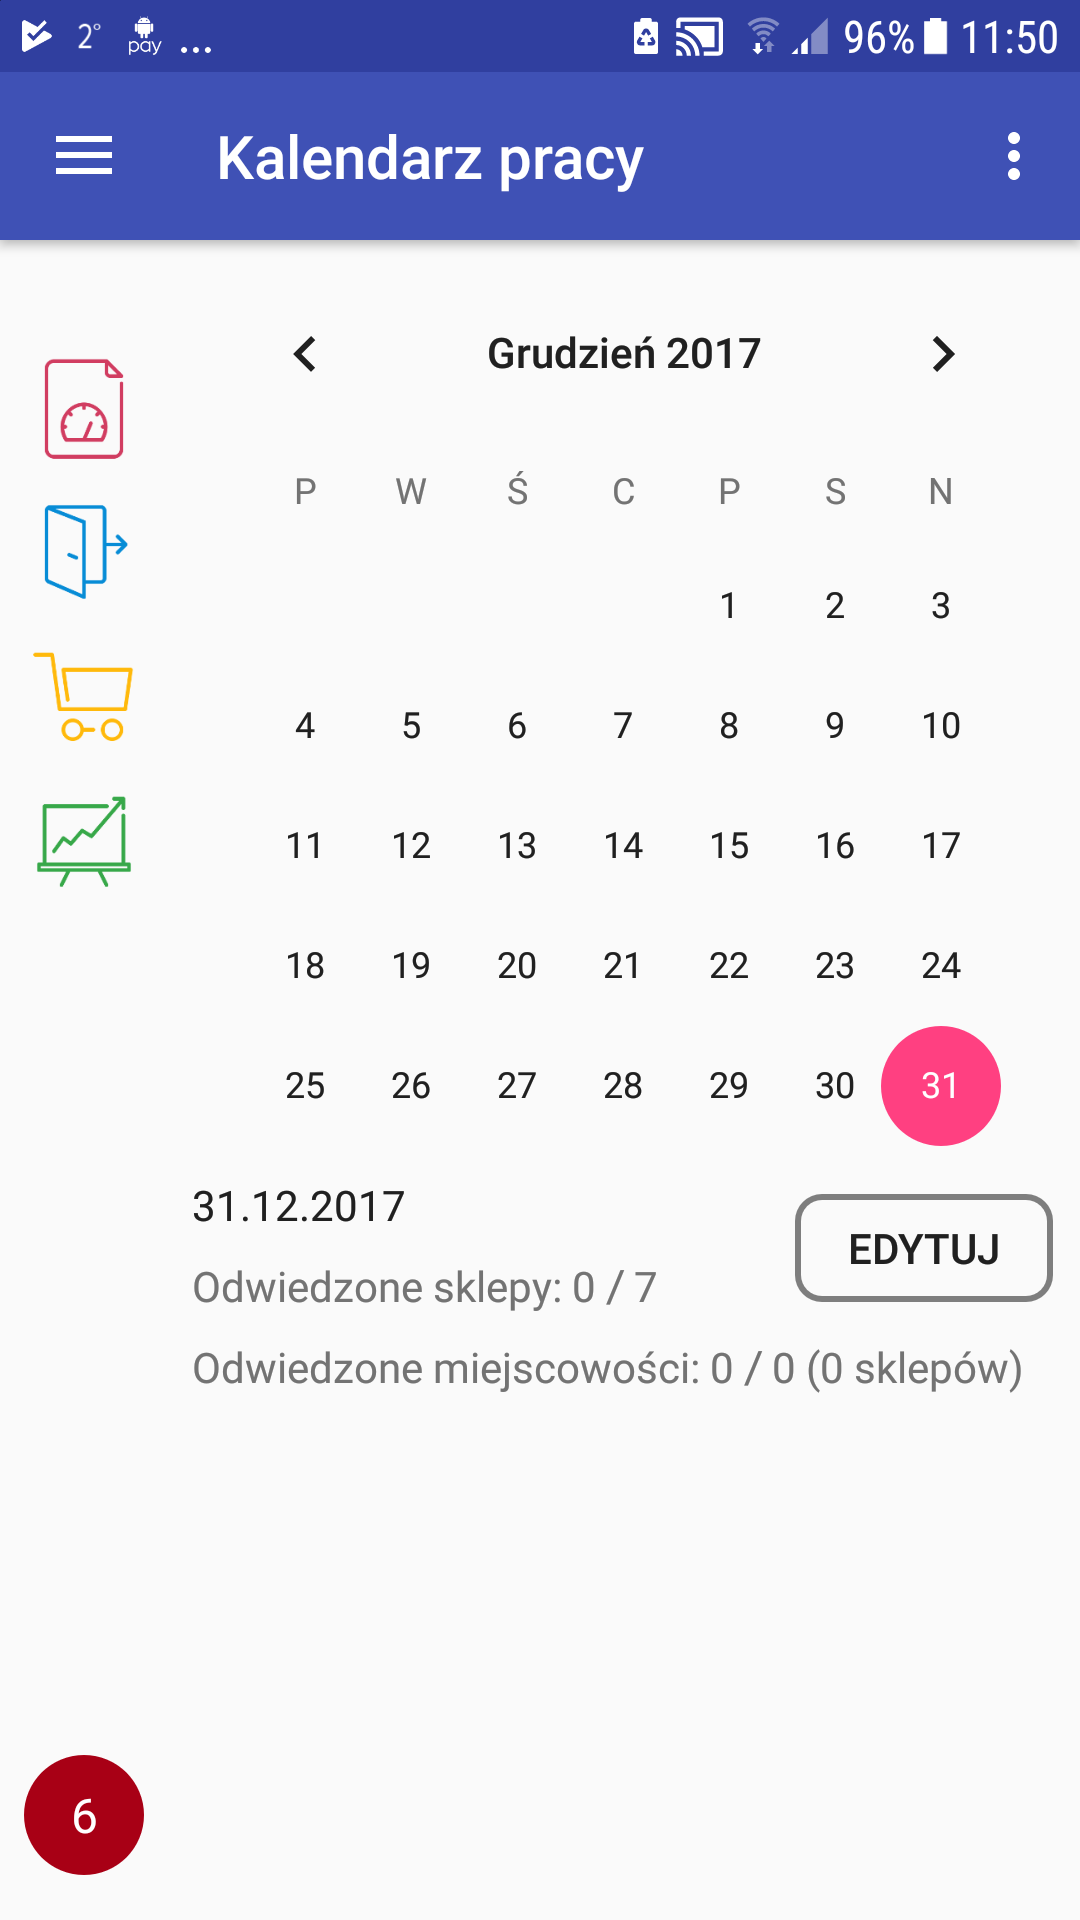 Kalendarz pracy